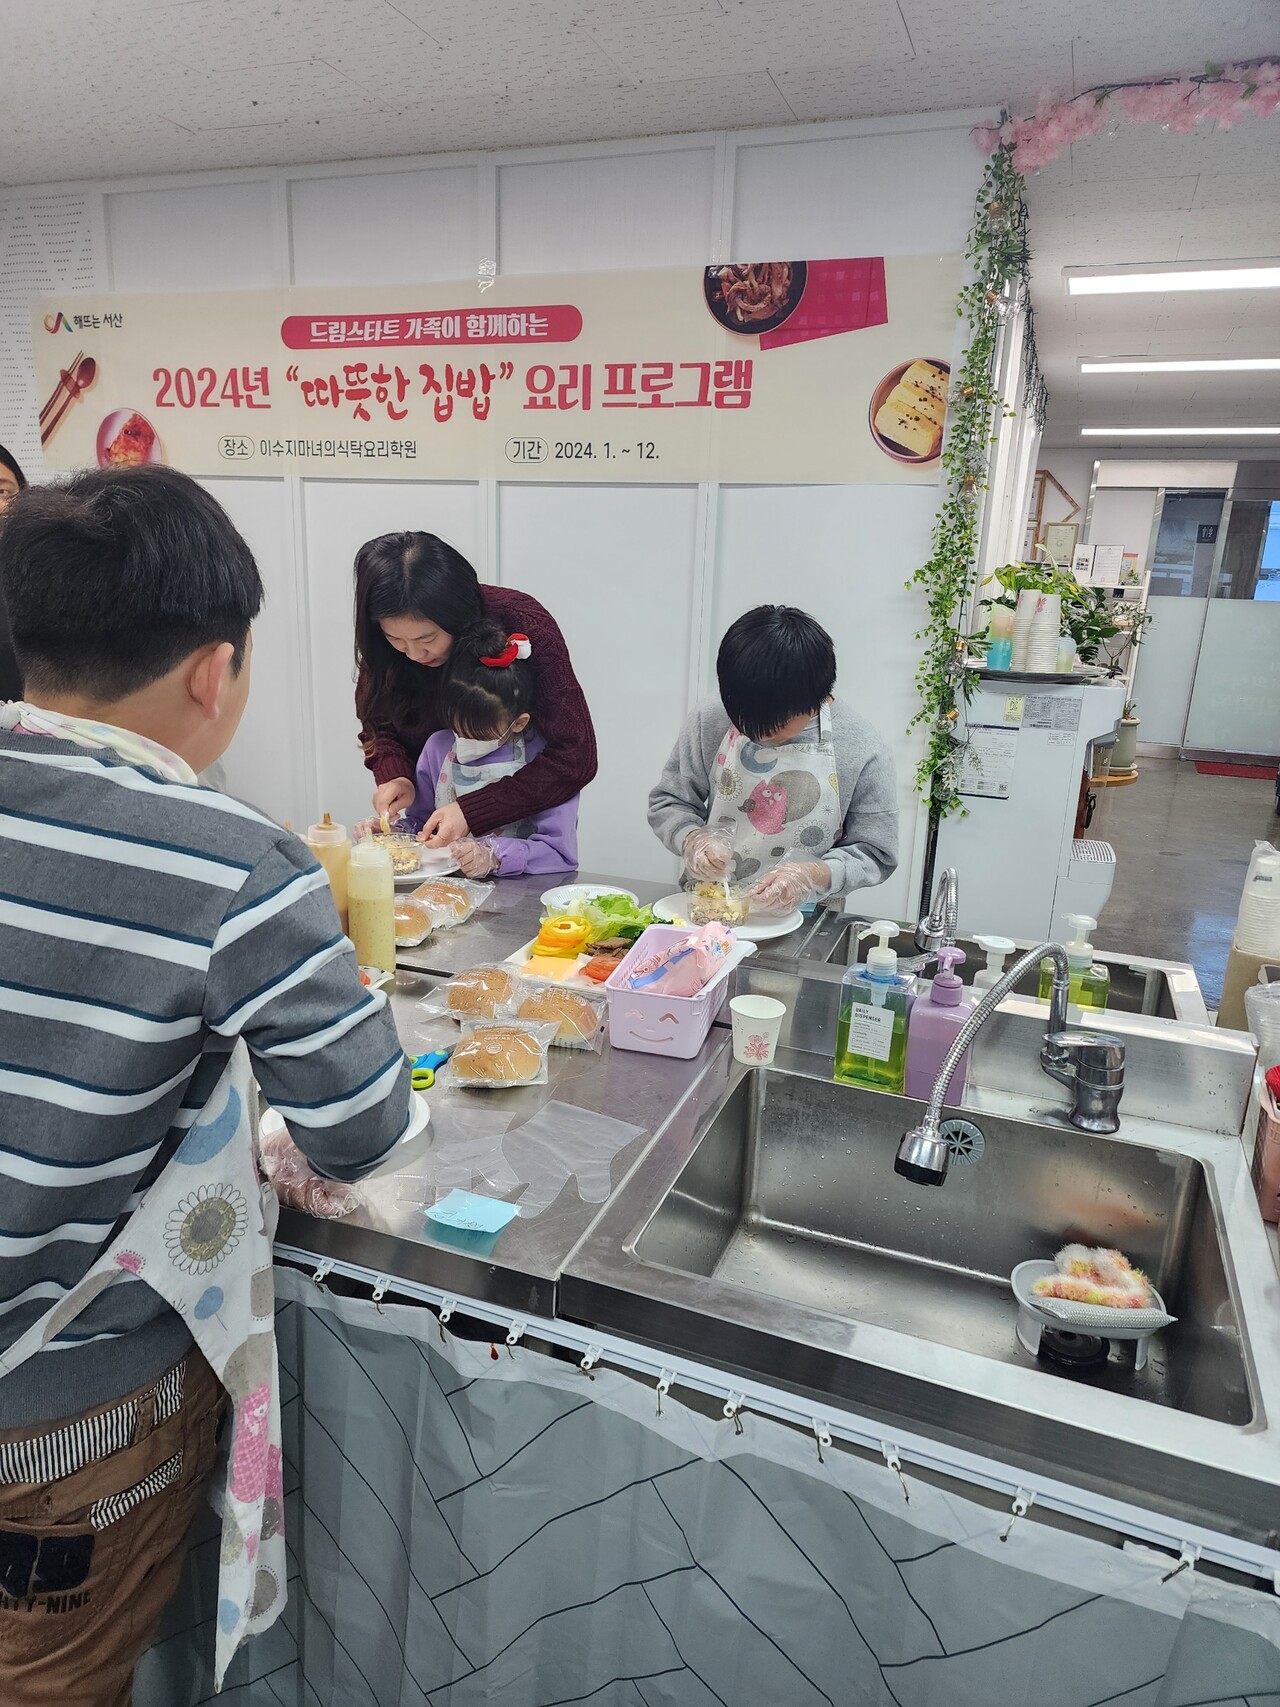 23일 이수지 마녀의 식탁 요리학원에서 진행된 ‘따듯한 집밥’요리 프로그램